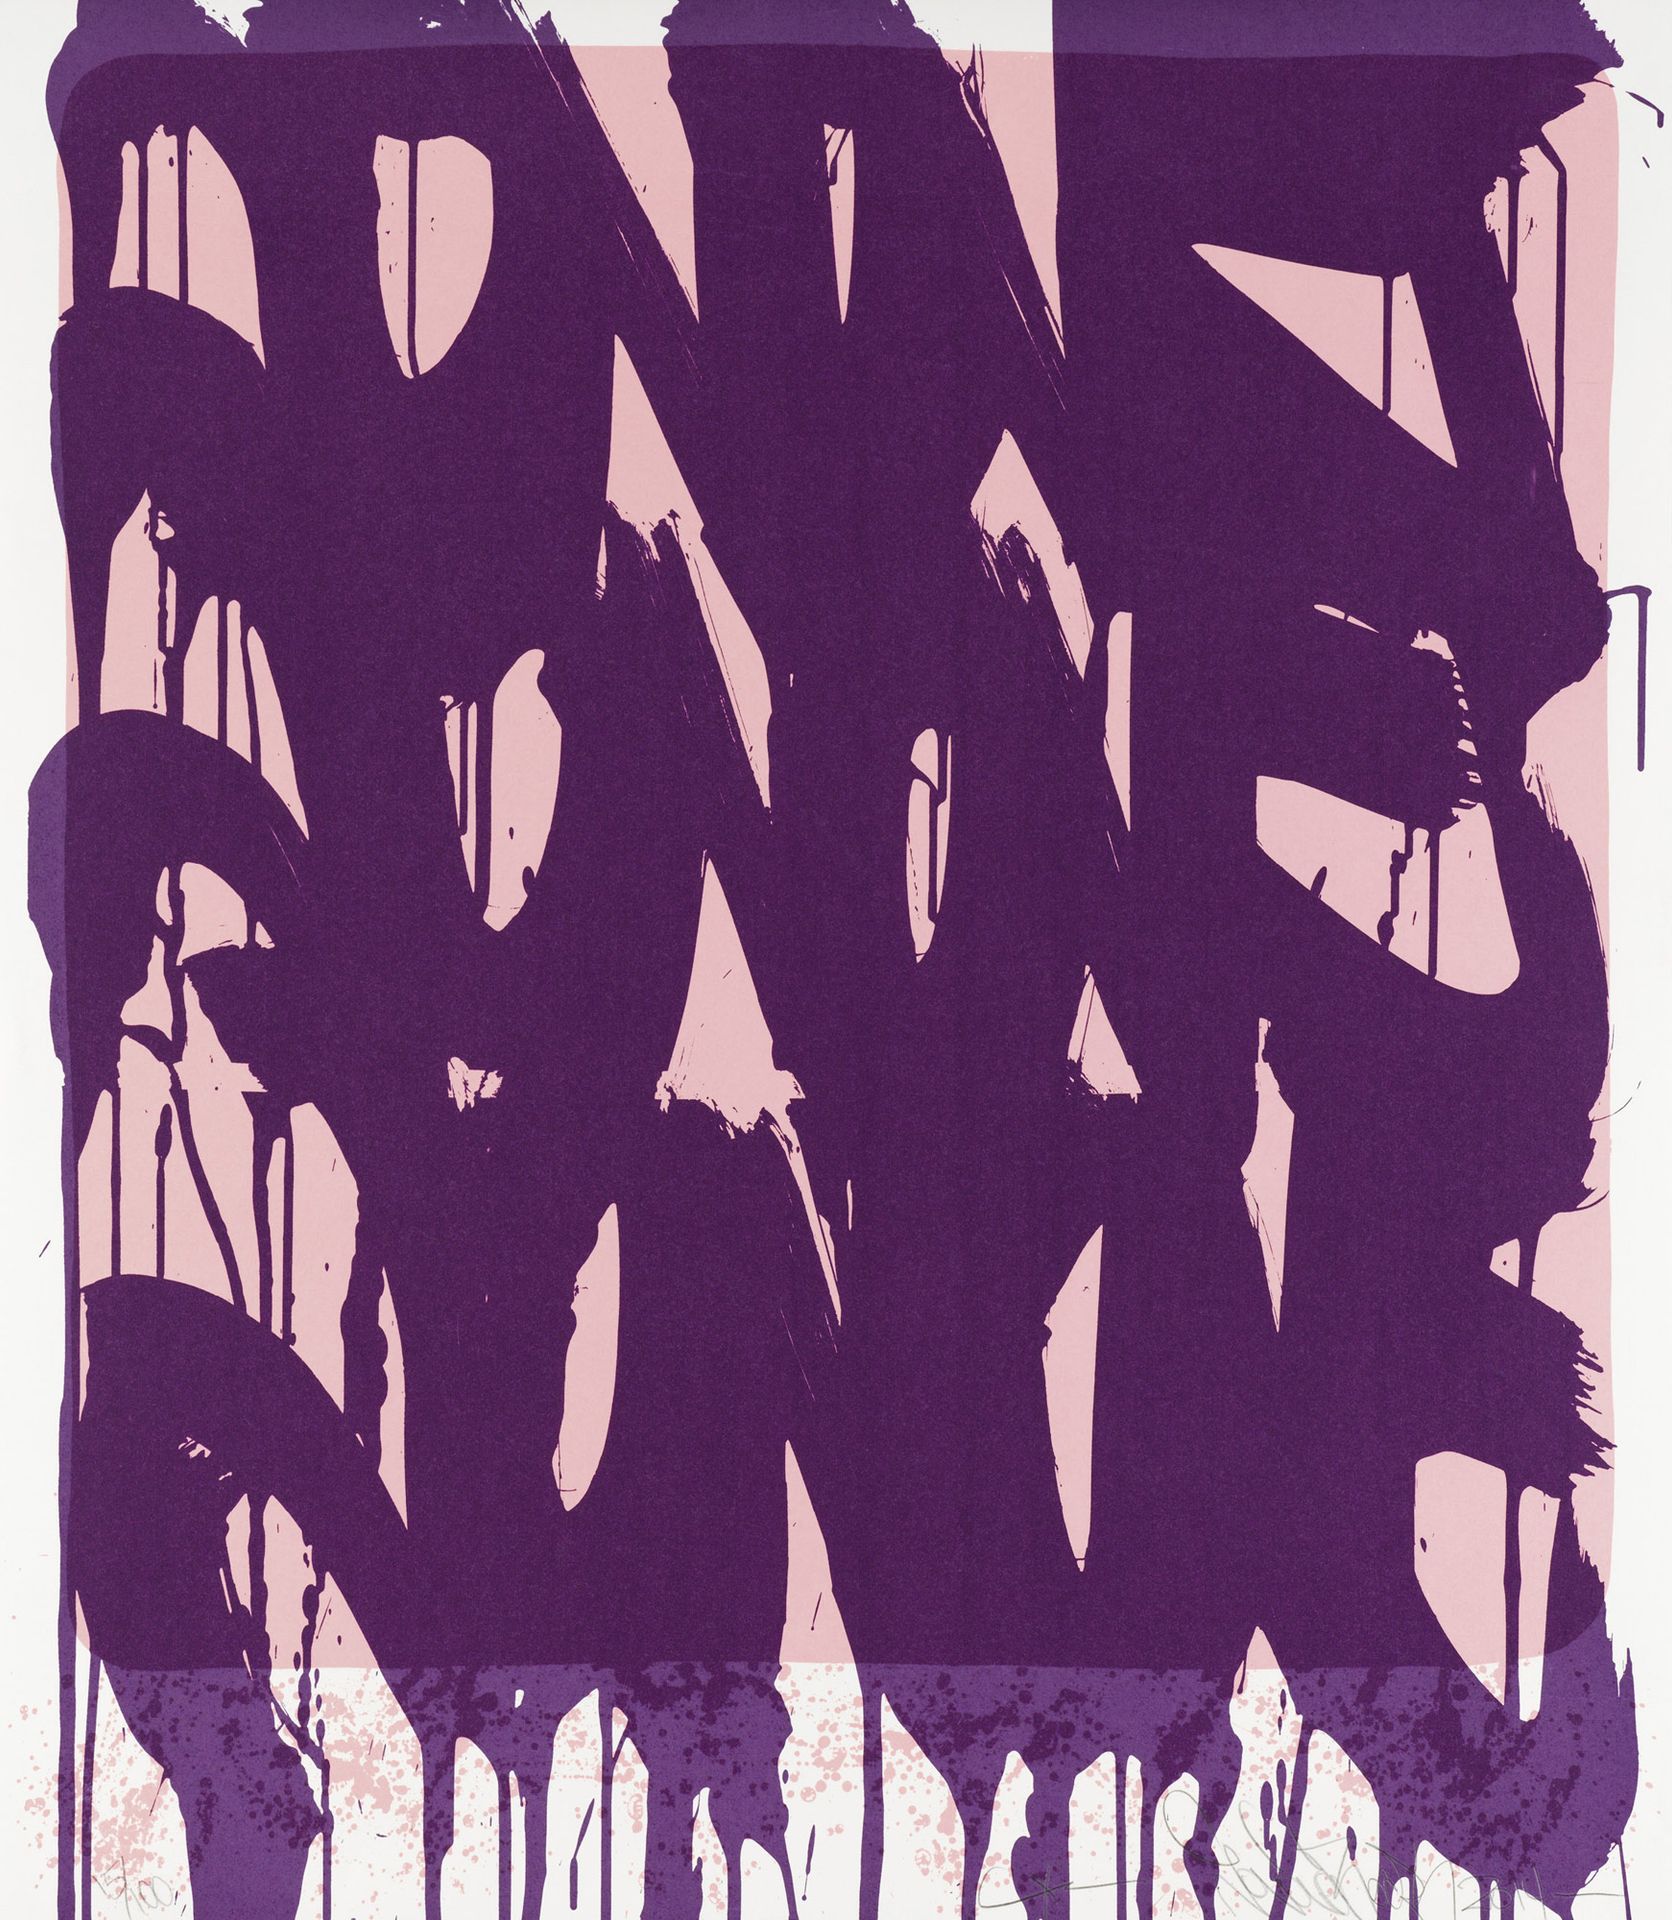 JONONE (ANDREW PERELLO DIT) (NE EN 1963) DRIPPING TAGS, 2014
Sérigraphie sur pap&hellip;